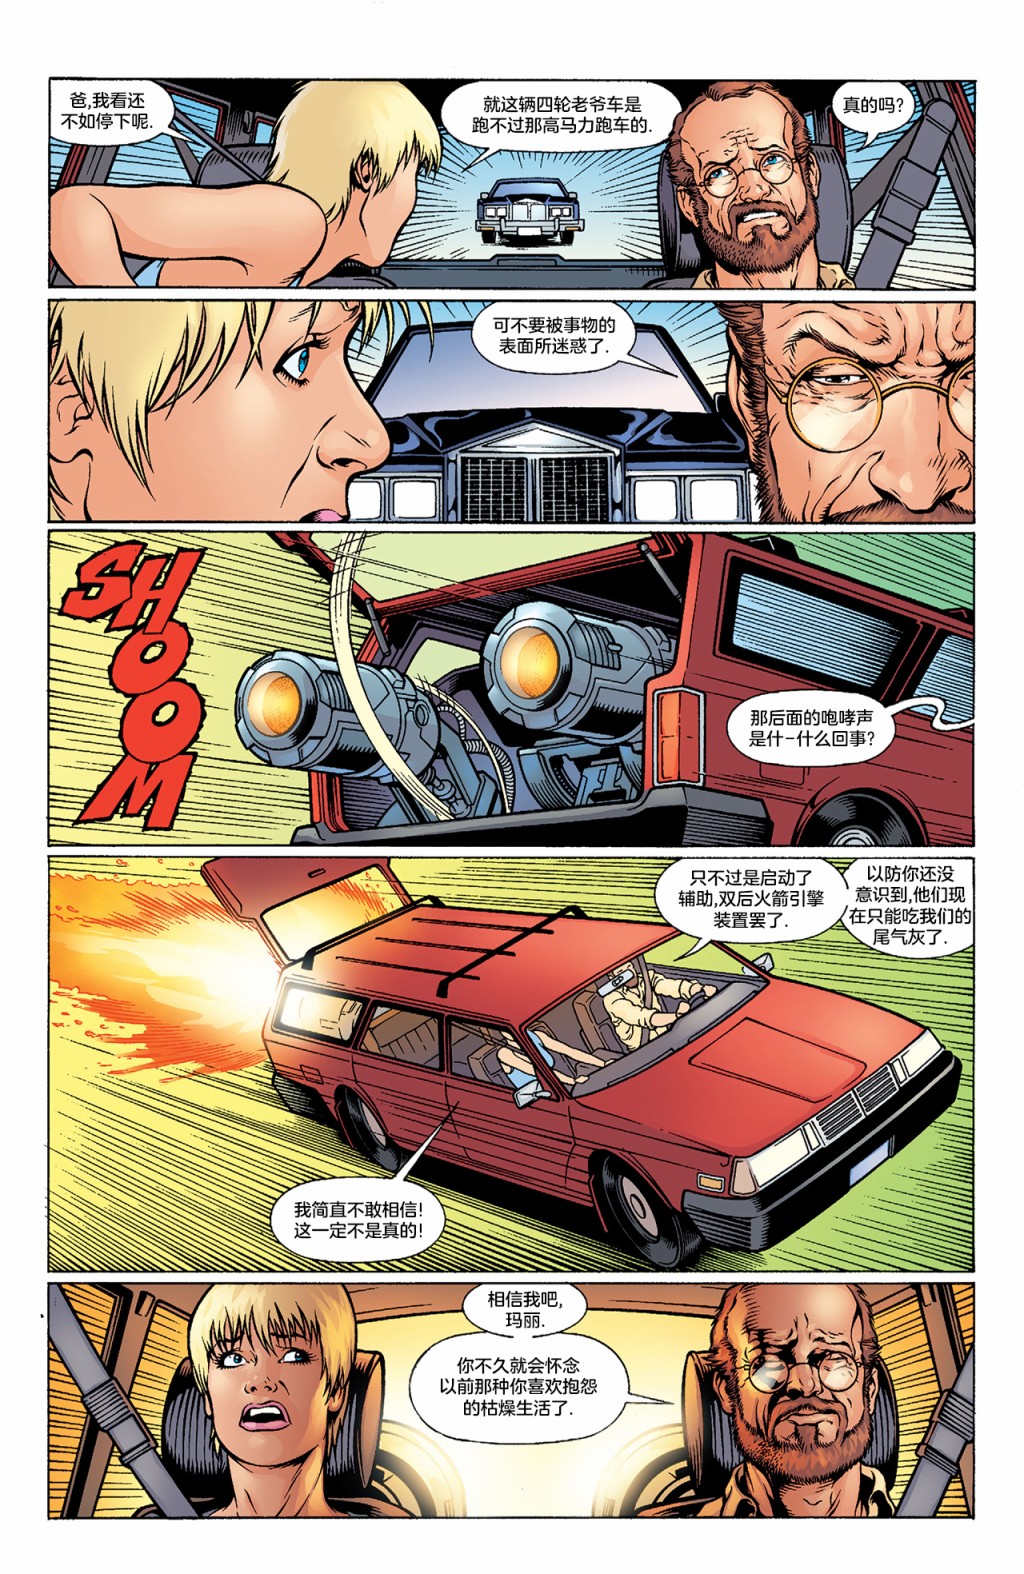 試想一下斯坦李的DC宇宙 - 閃電俠 - 1